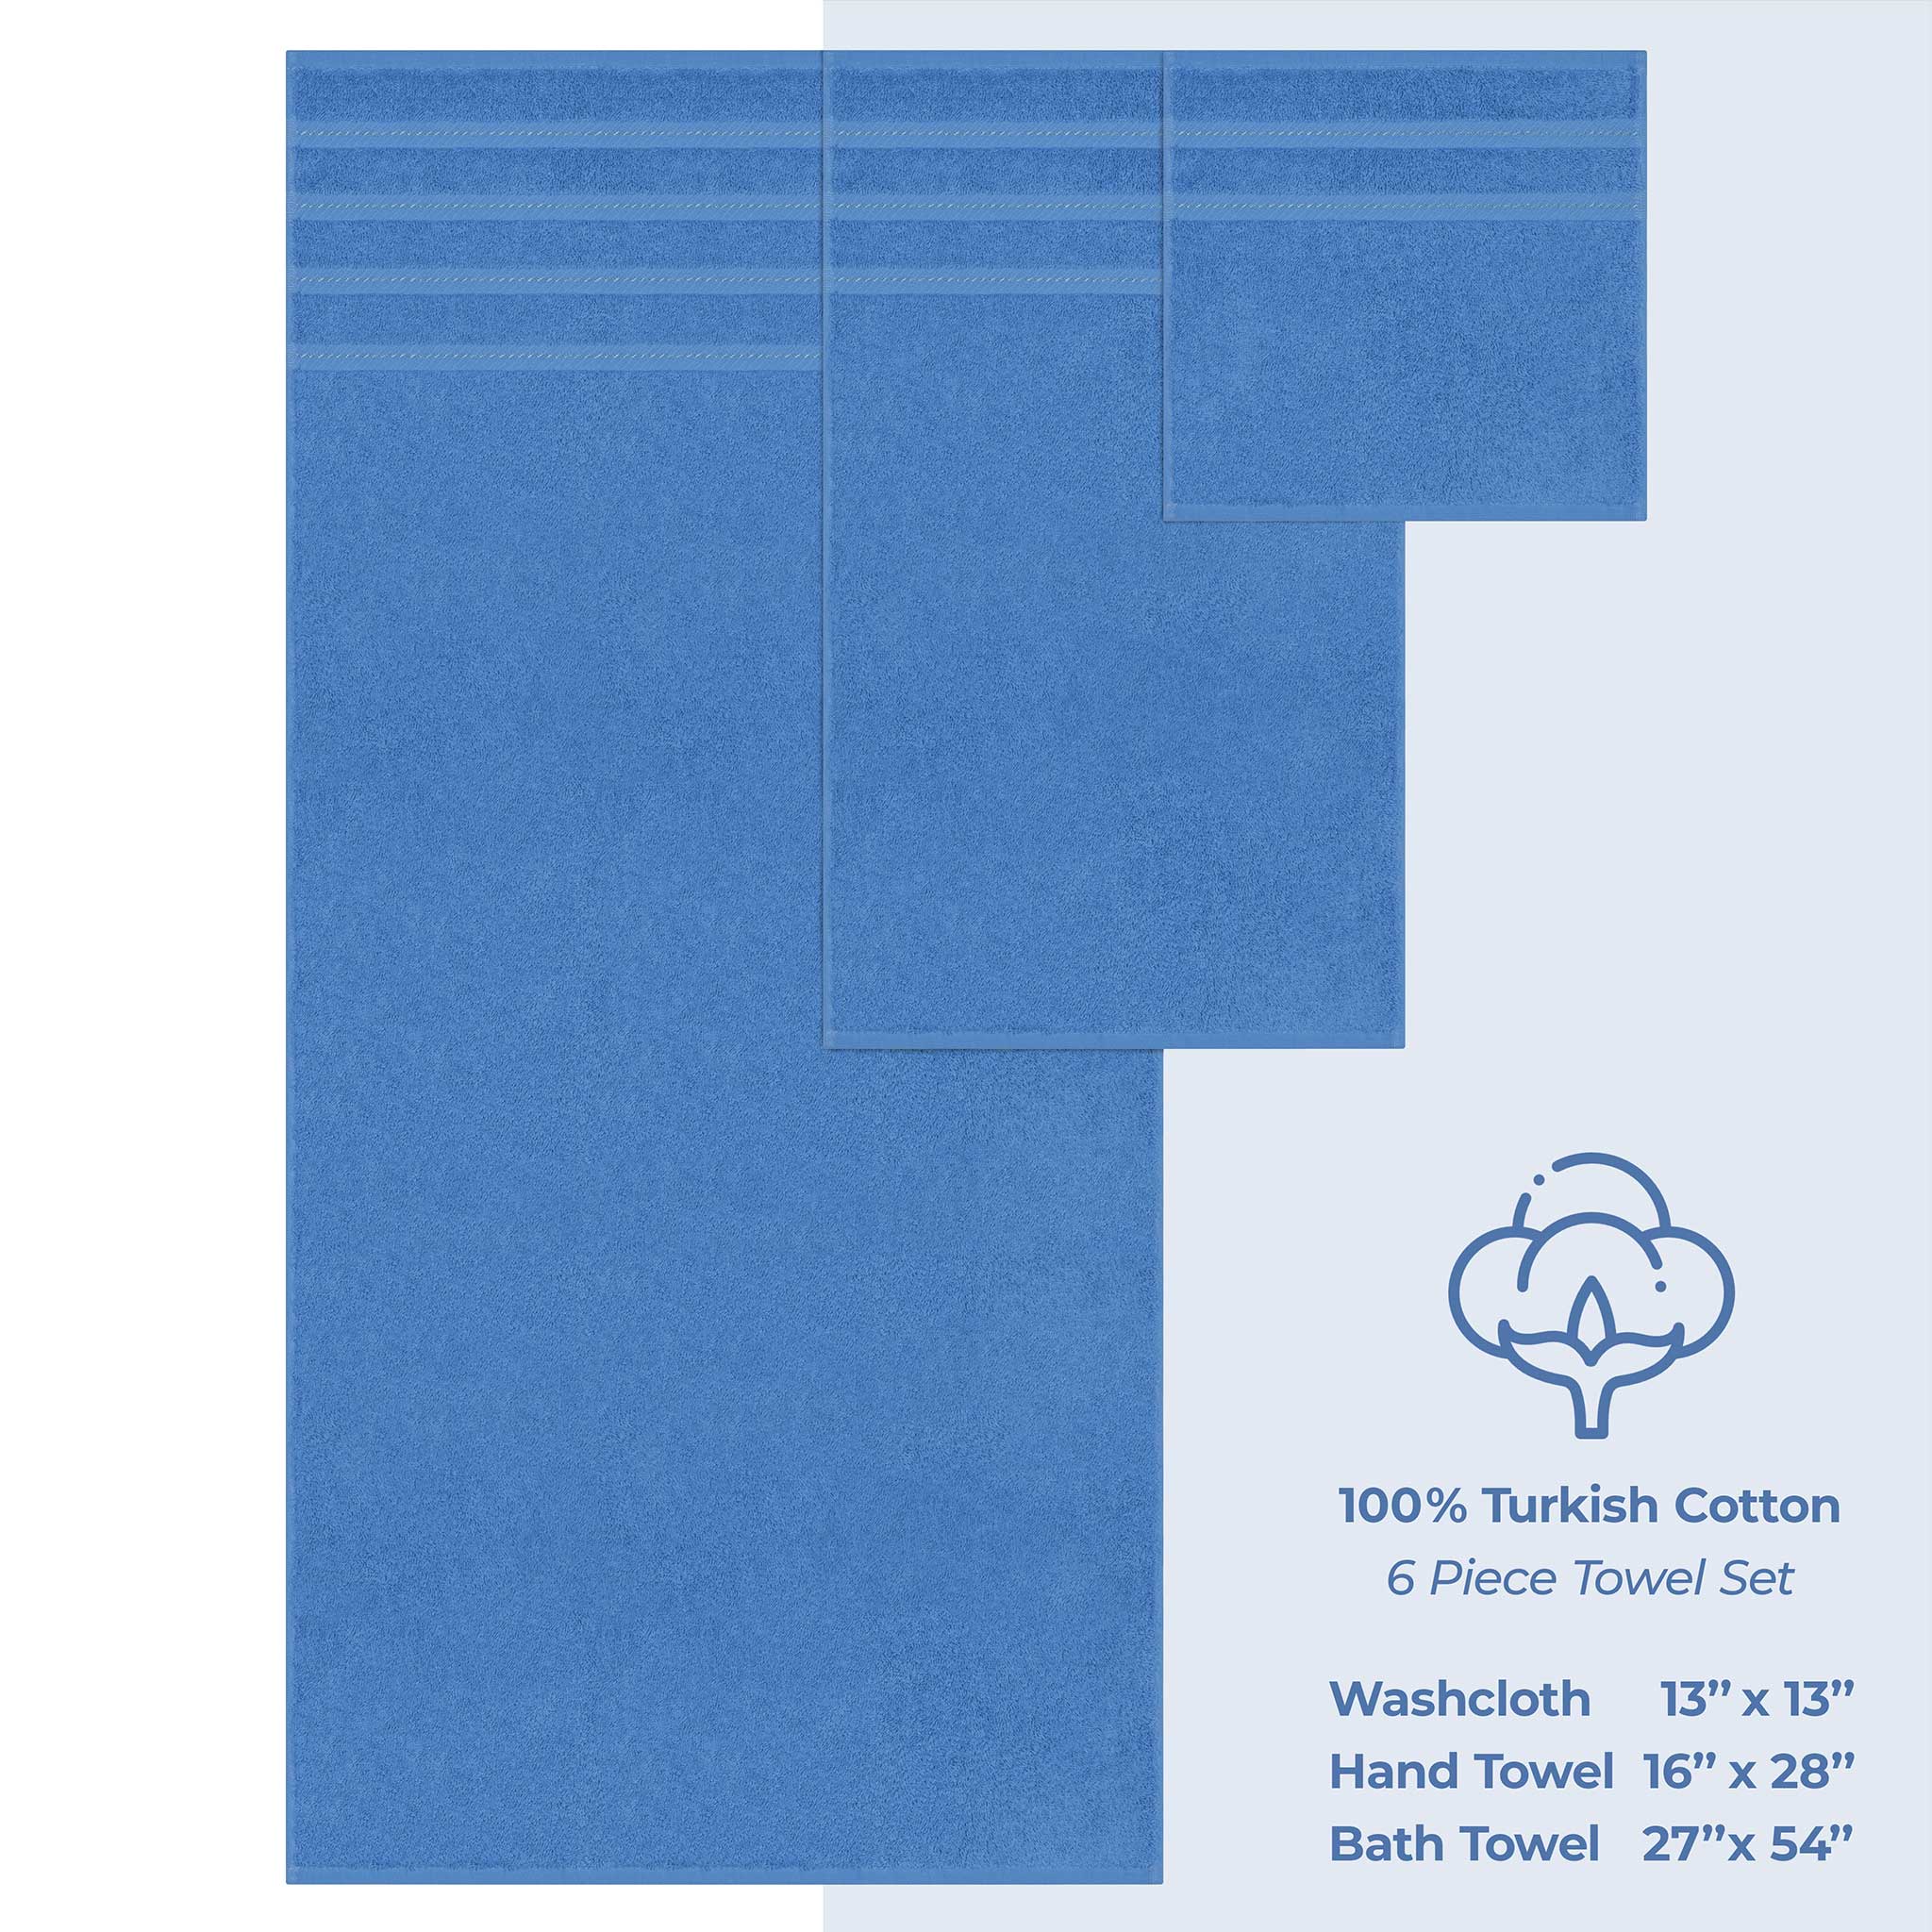 American Soft Linen - 6 Piece Turkish Cotton Bath Towel Set - Electric-Blue - 4